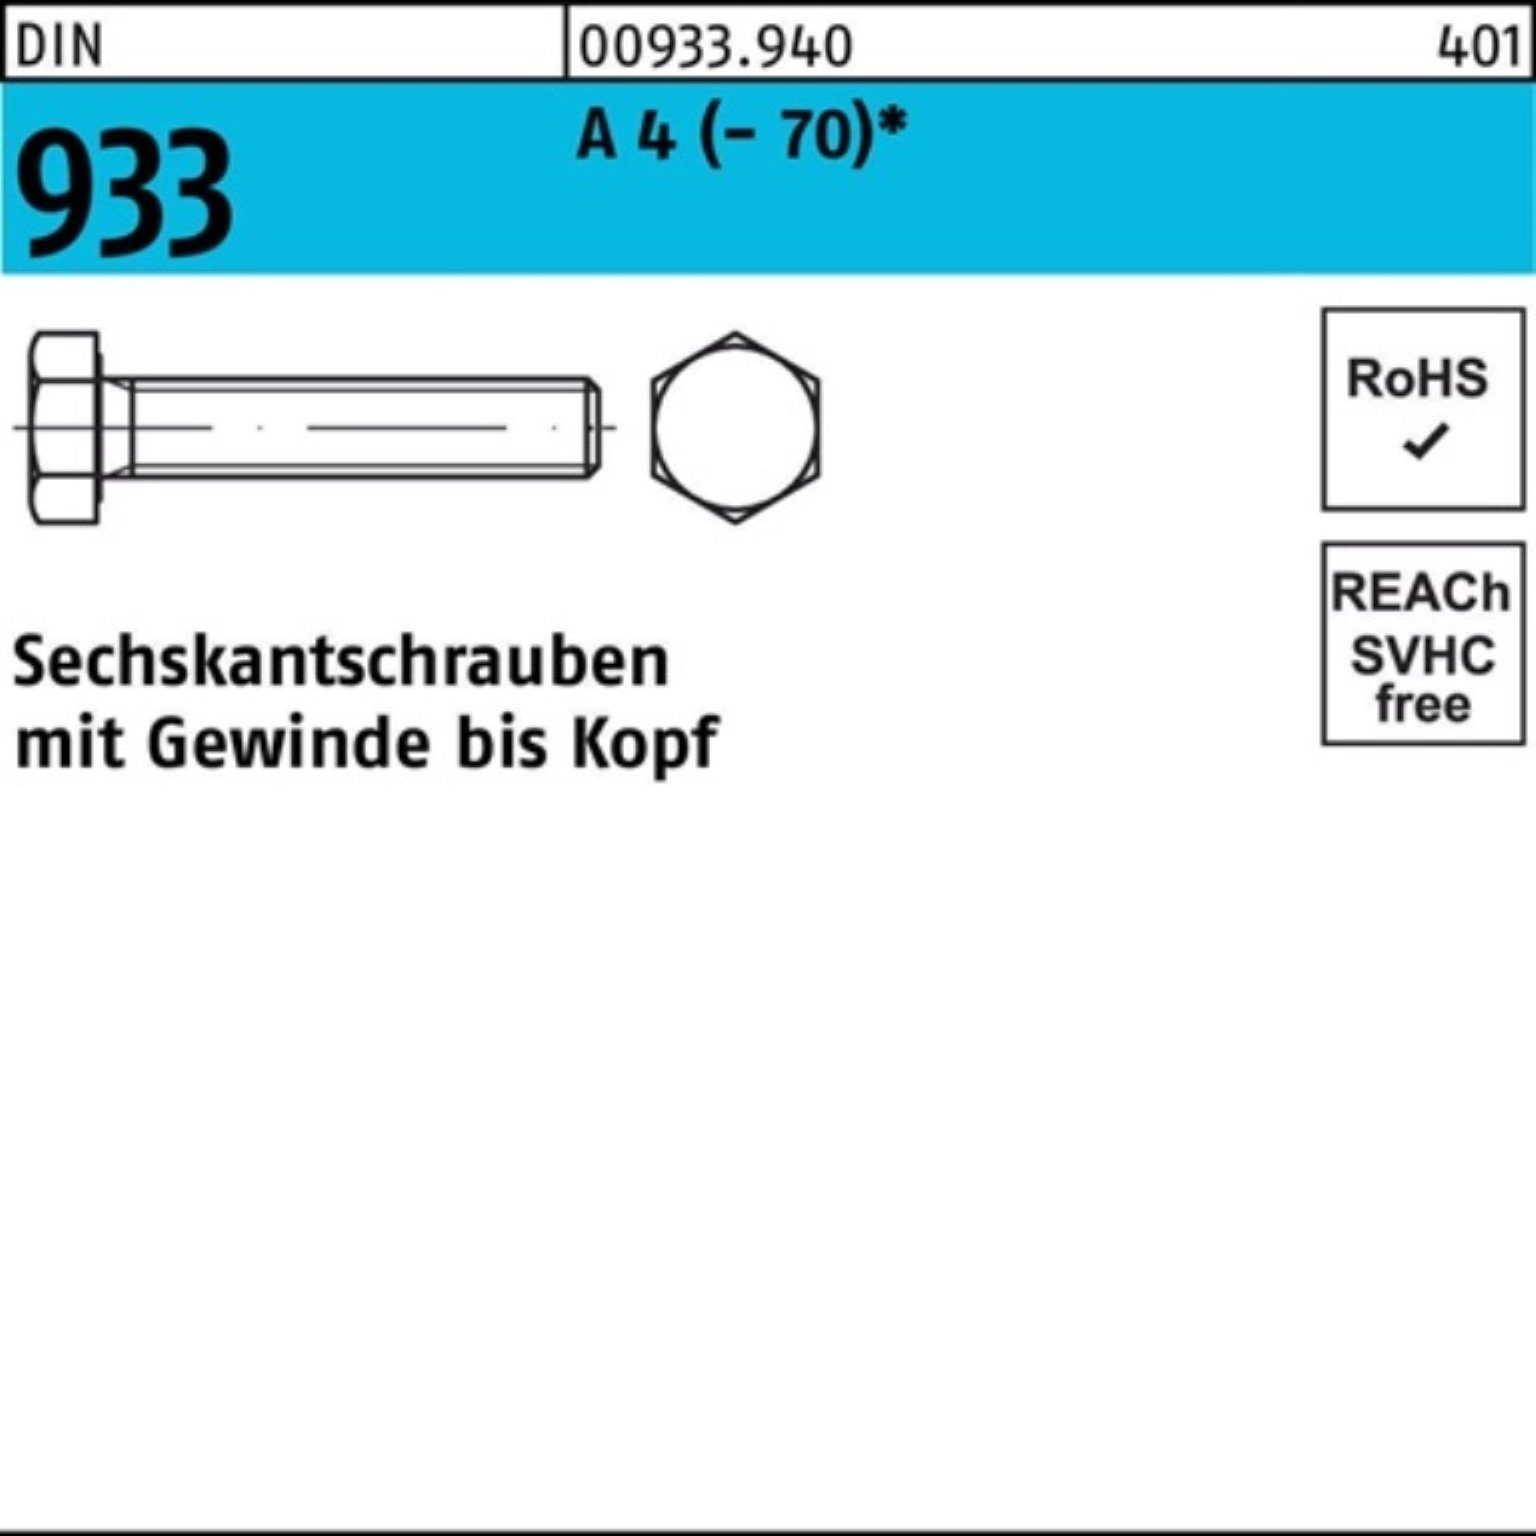 Pack Reyher Sechskantschraube Sechskantschraube M18x (70) 933 Stück 1 DI DIN 90 100er 4 VG A